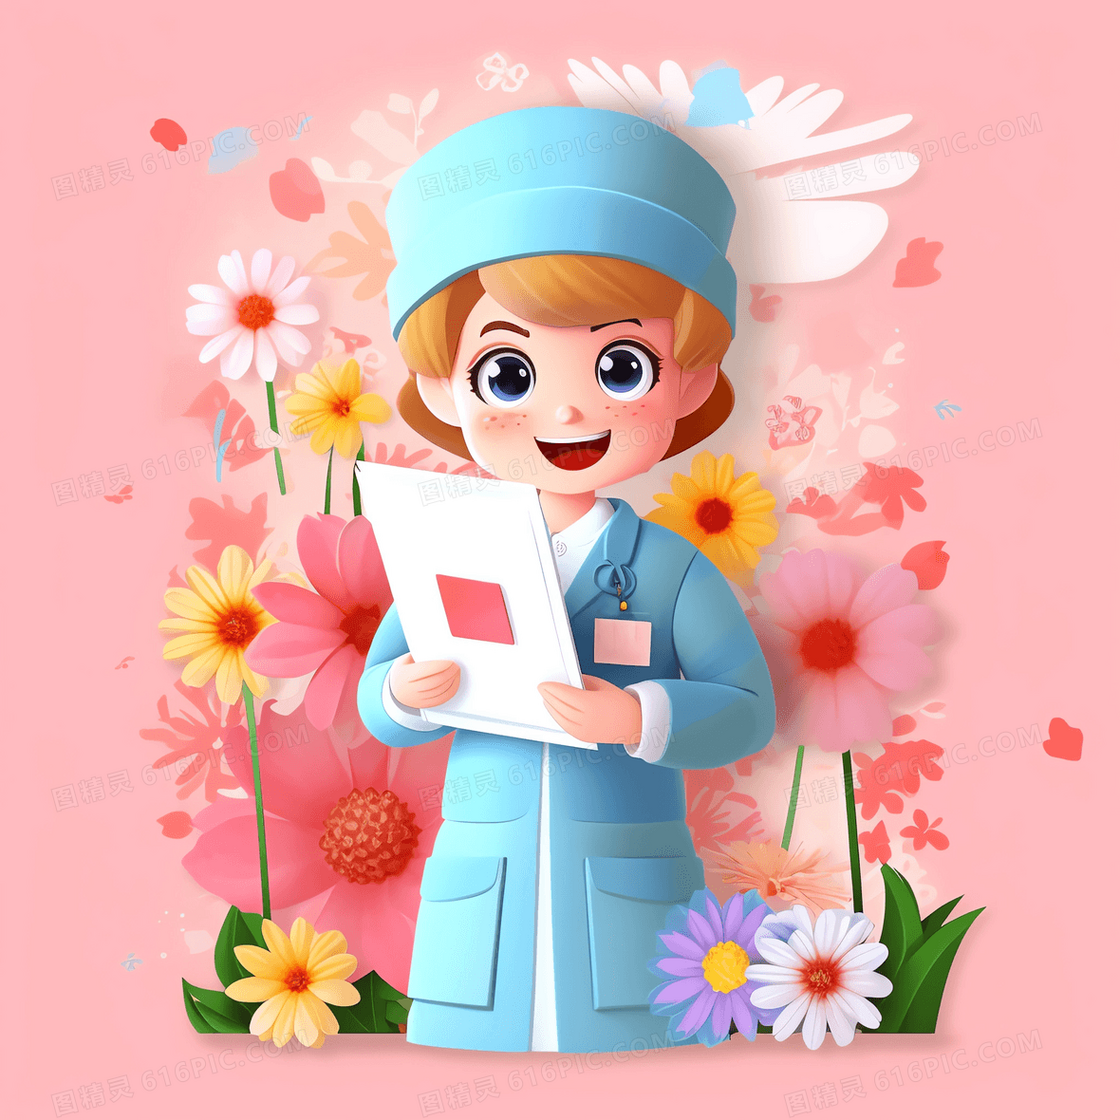 身穿蓝色护士服的护士插画